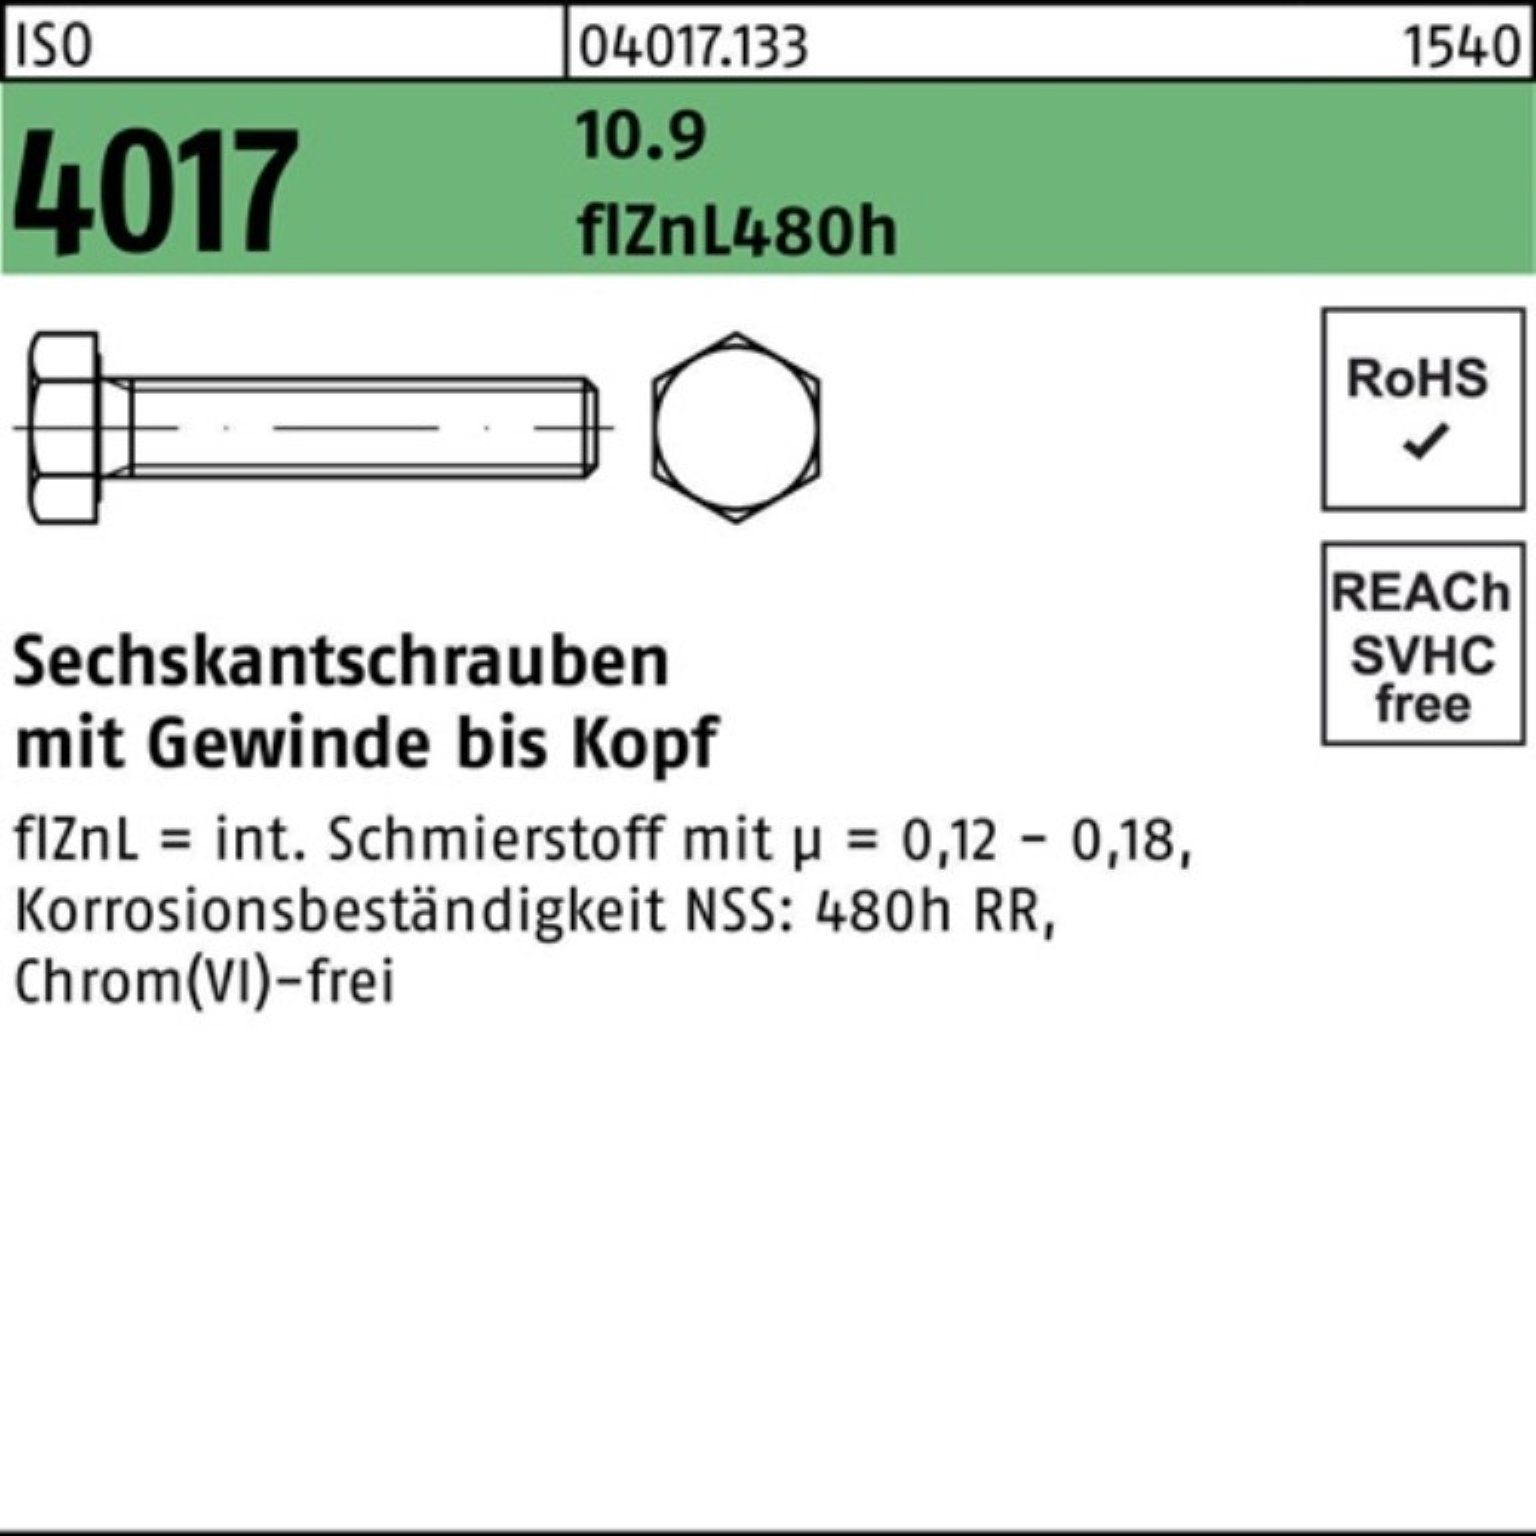 VG zinklamellenb. Bufab Sechskantschraube M8x 10.9 200er 20 20 Sechskantschraube Pack 4017 ISO